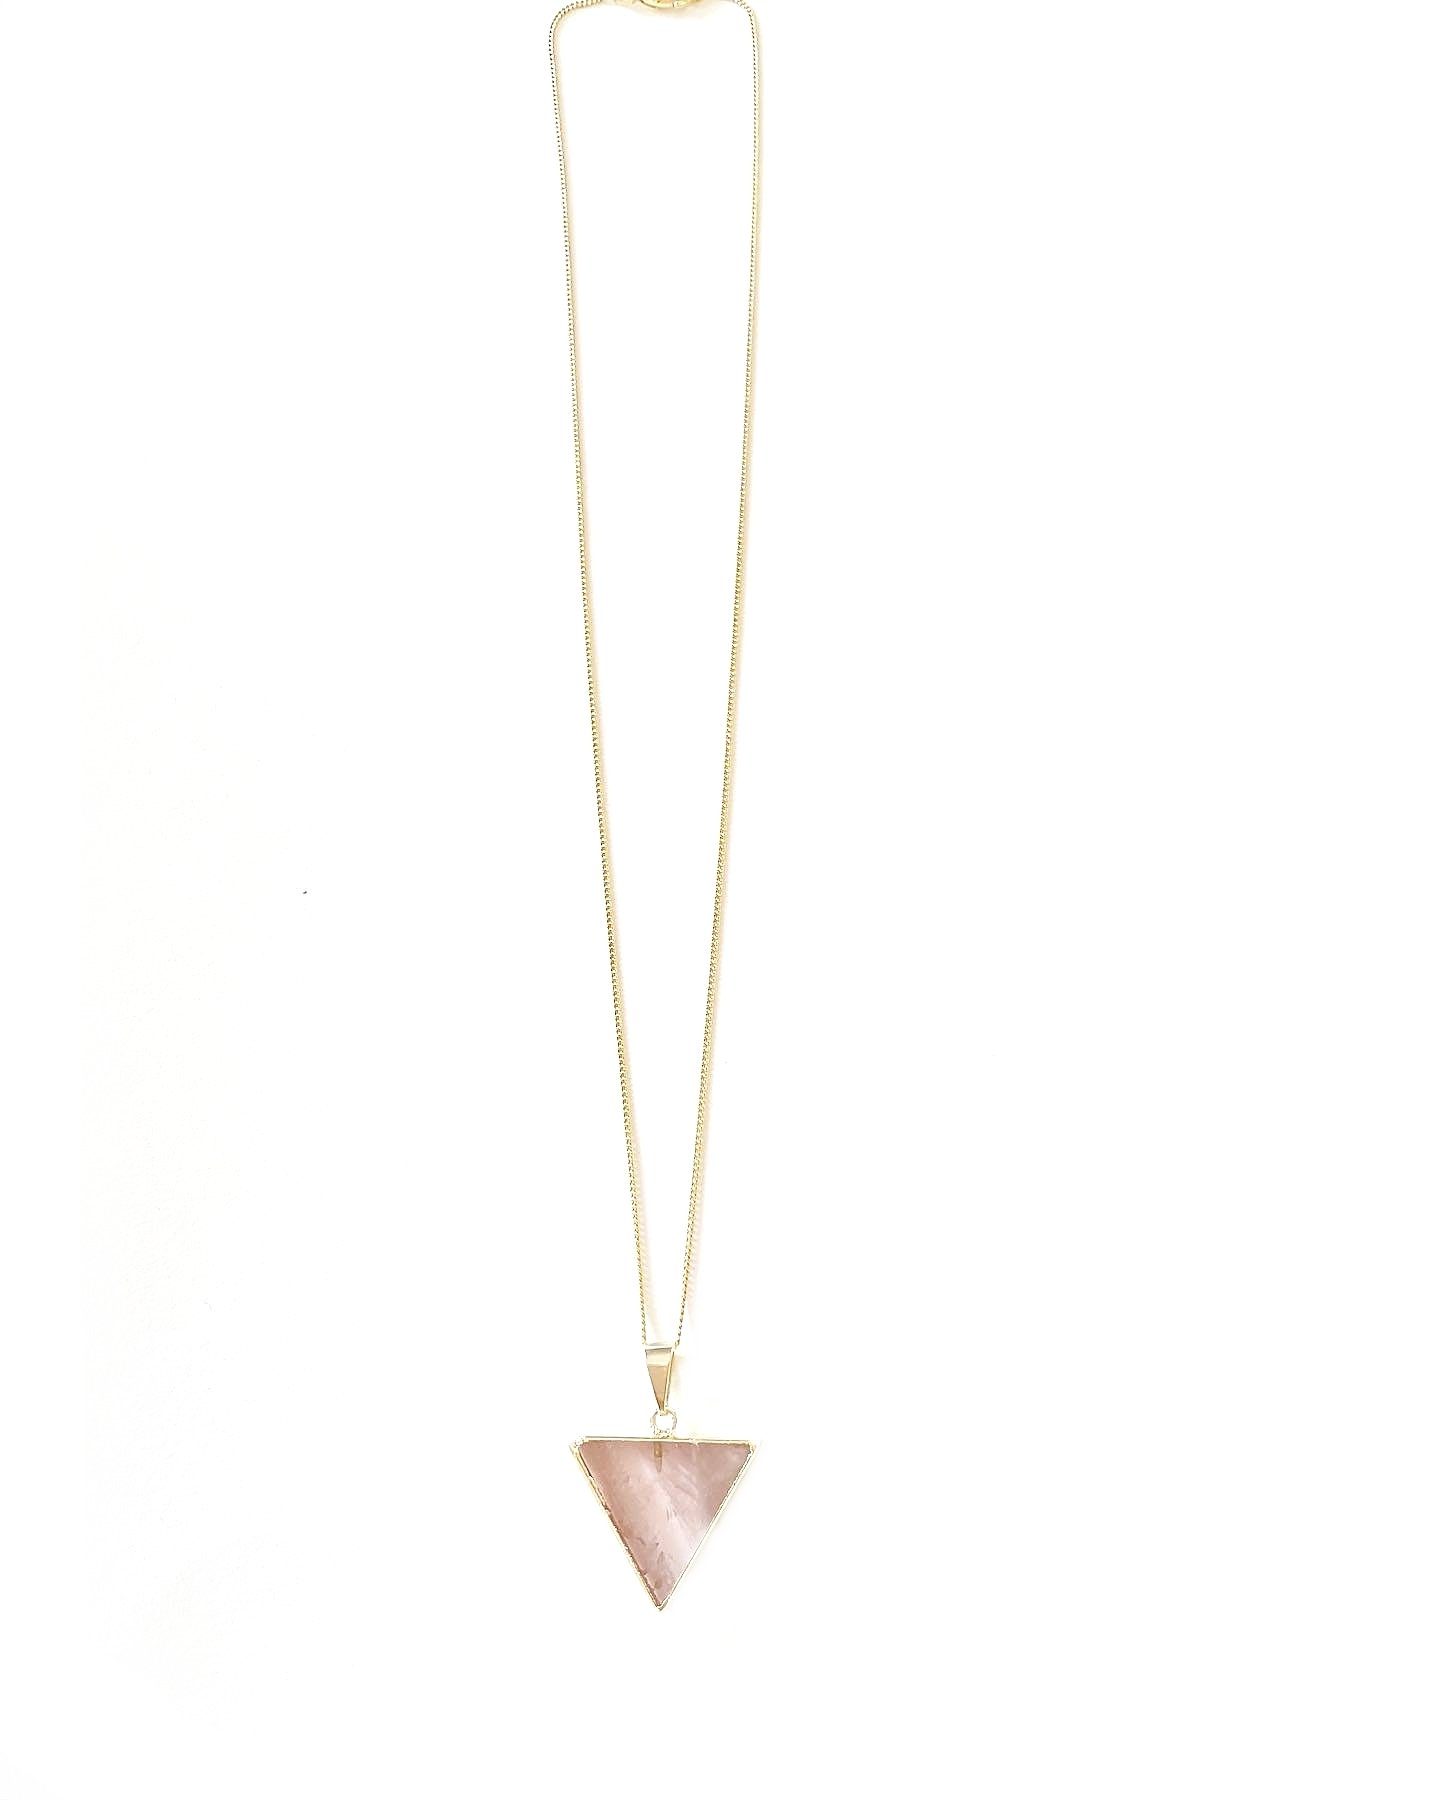 Crystal and Sage Jewelry Halskette, vergoldet Anhänger mit Kette Dreieck Rosenquarz